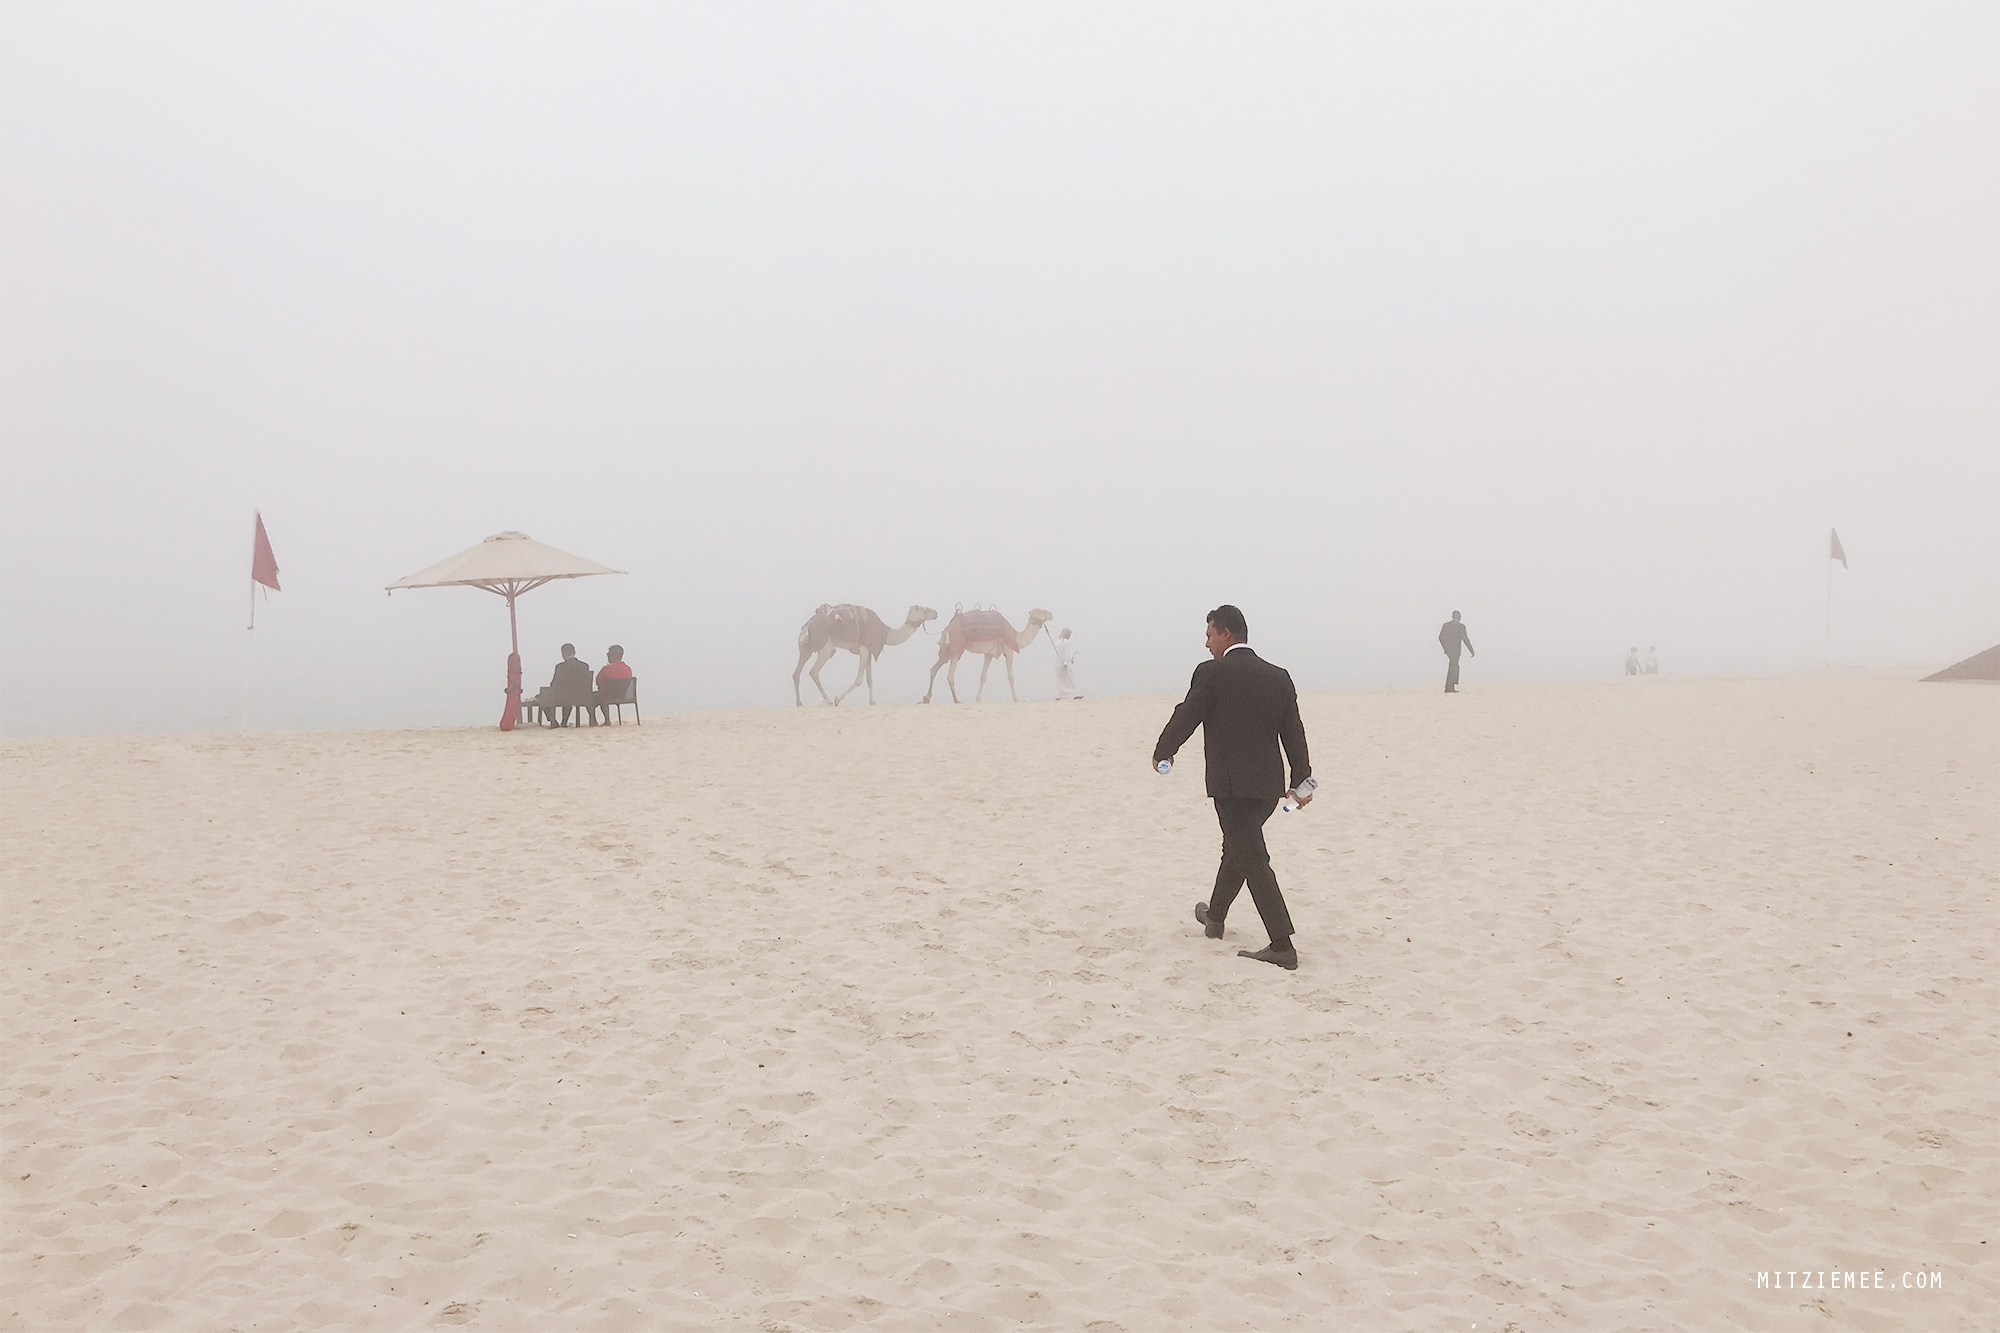 JBR Beach on a hazy day, Dubai